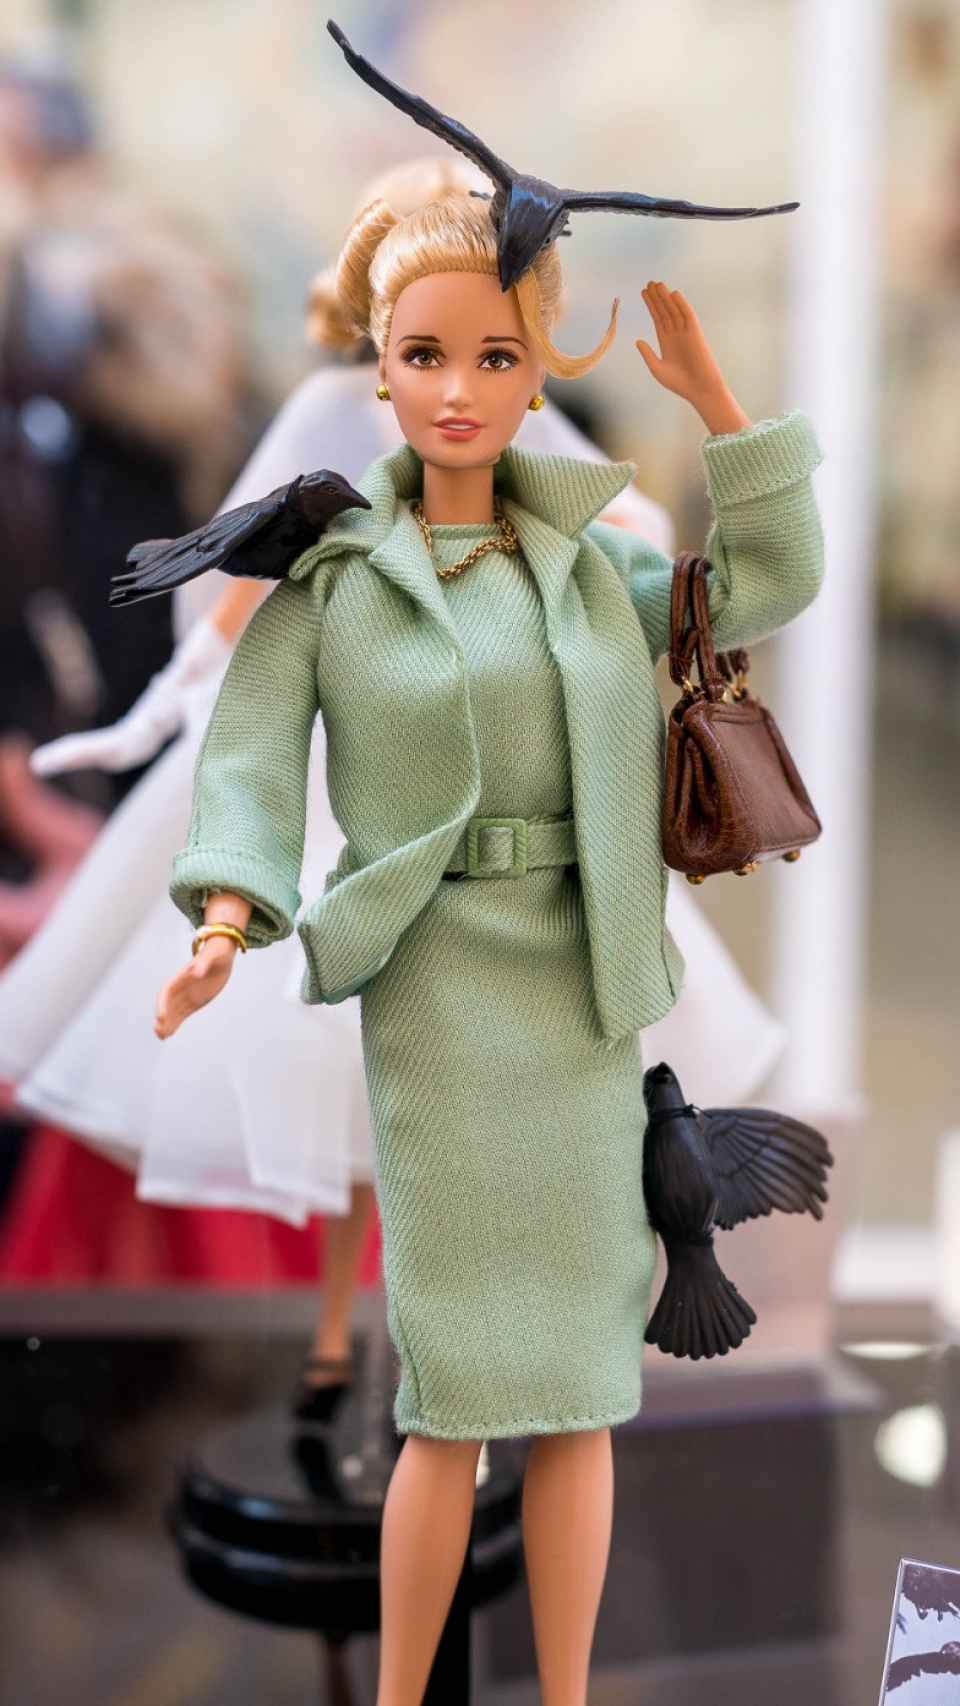 Barbie caracterizada como la protagonista de Los Pájaros.